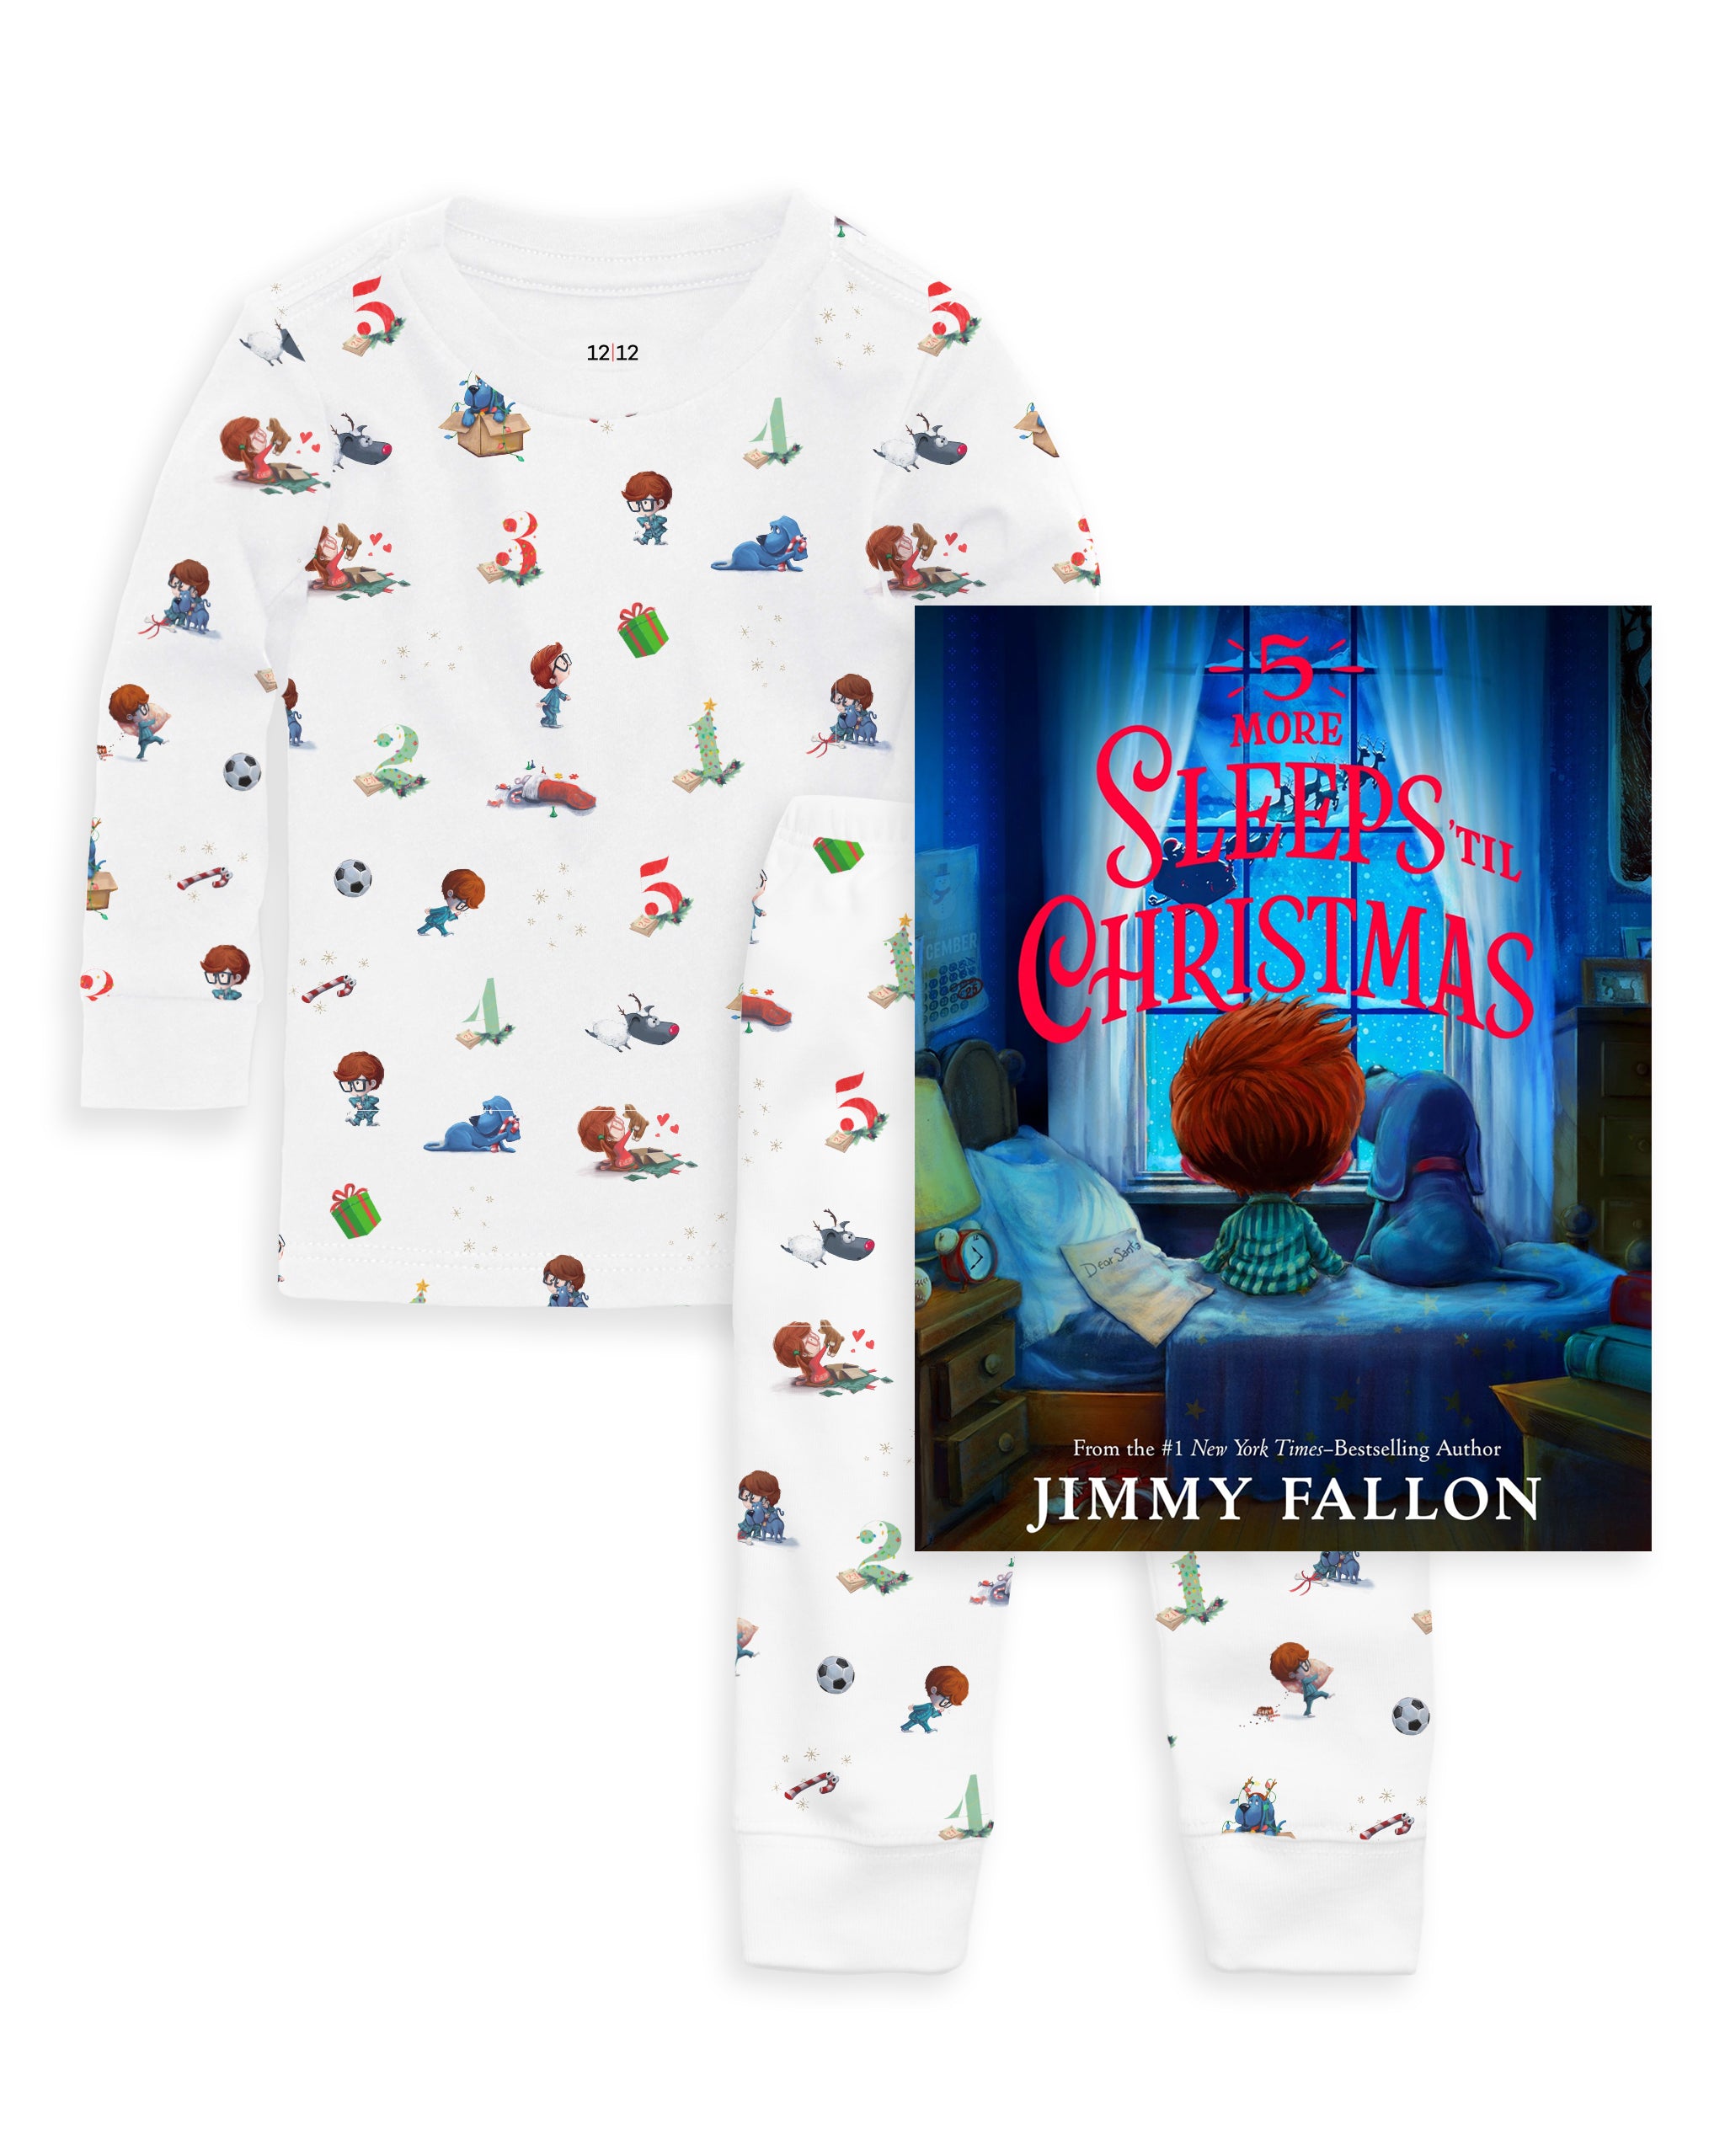 The Organic Long Sleeve Pajama and Book Gift Set 5 More Sleeps 'til Christmas